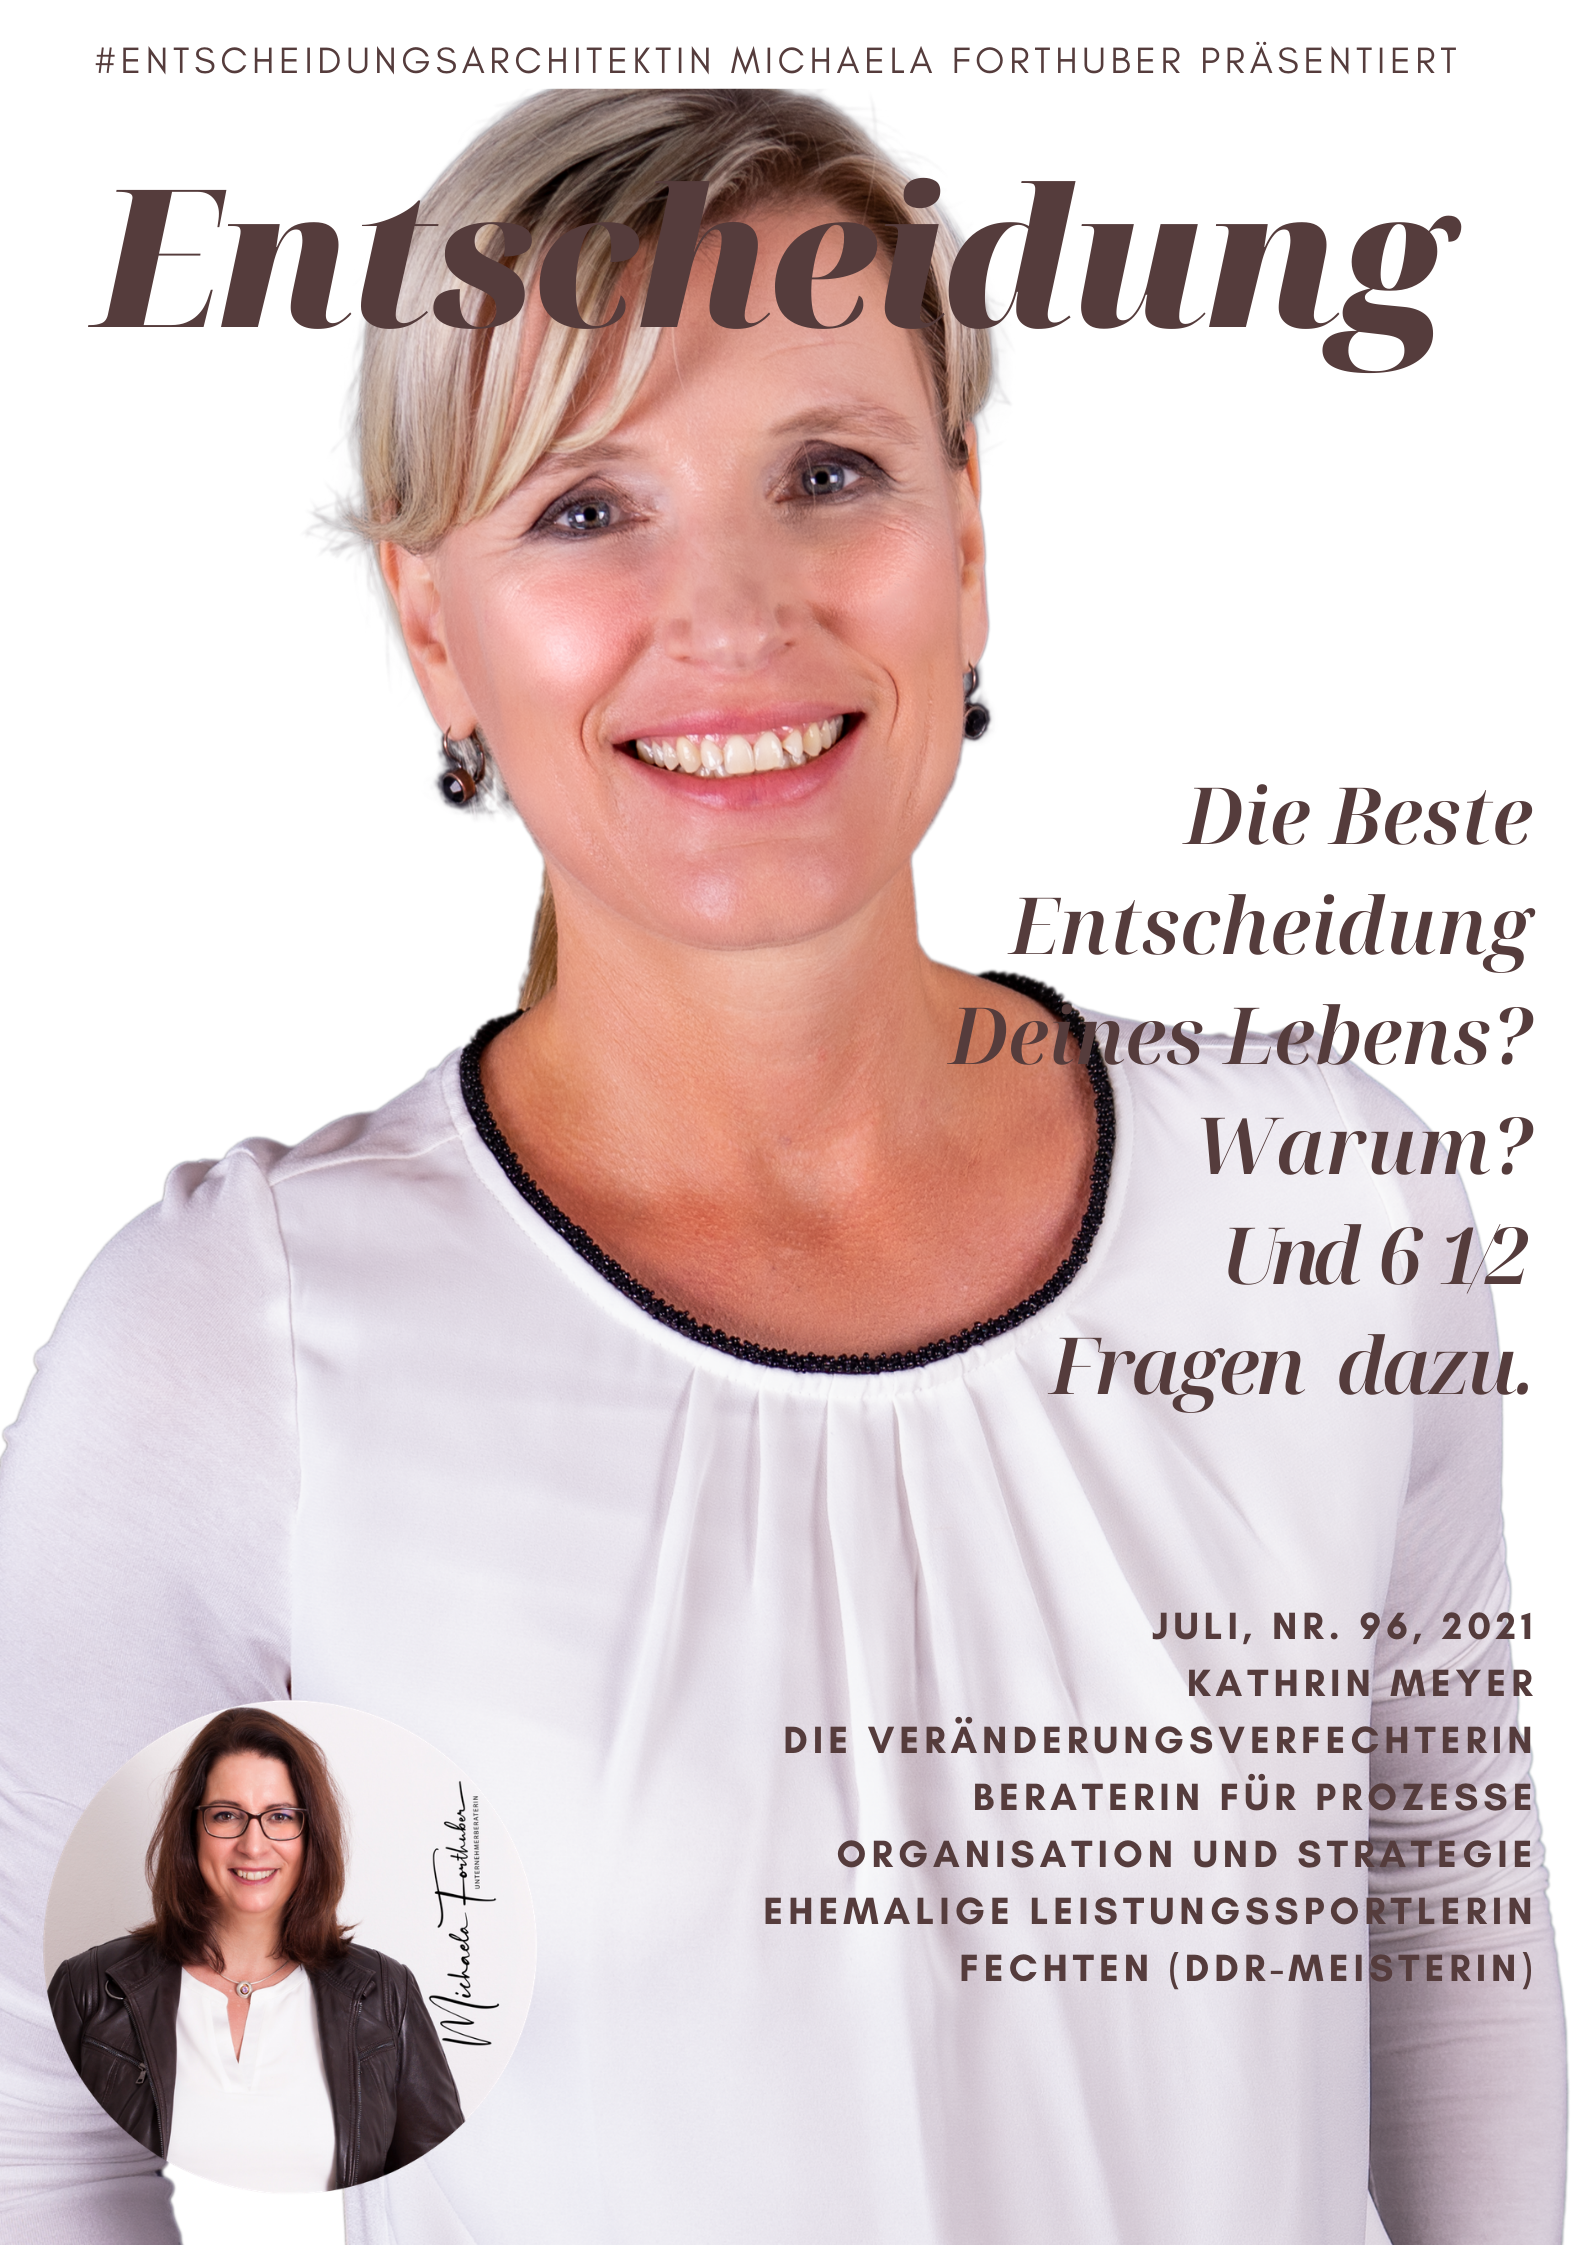 Blog Interview Entscheiden Cover Michaela Forthuber #Entscheidungsarchitektin mit Kathrin Meyer